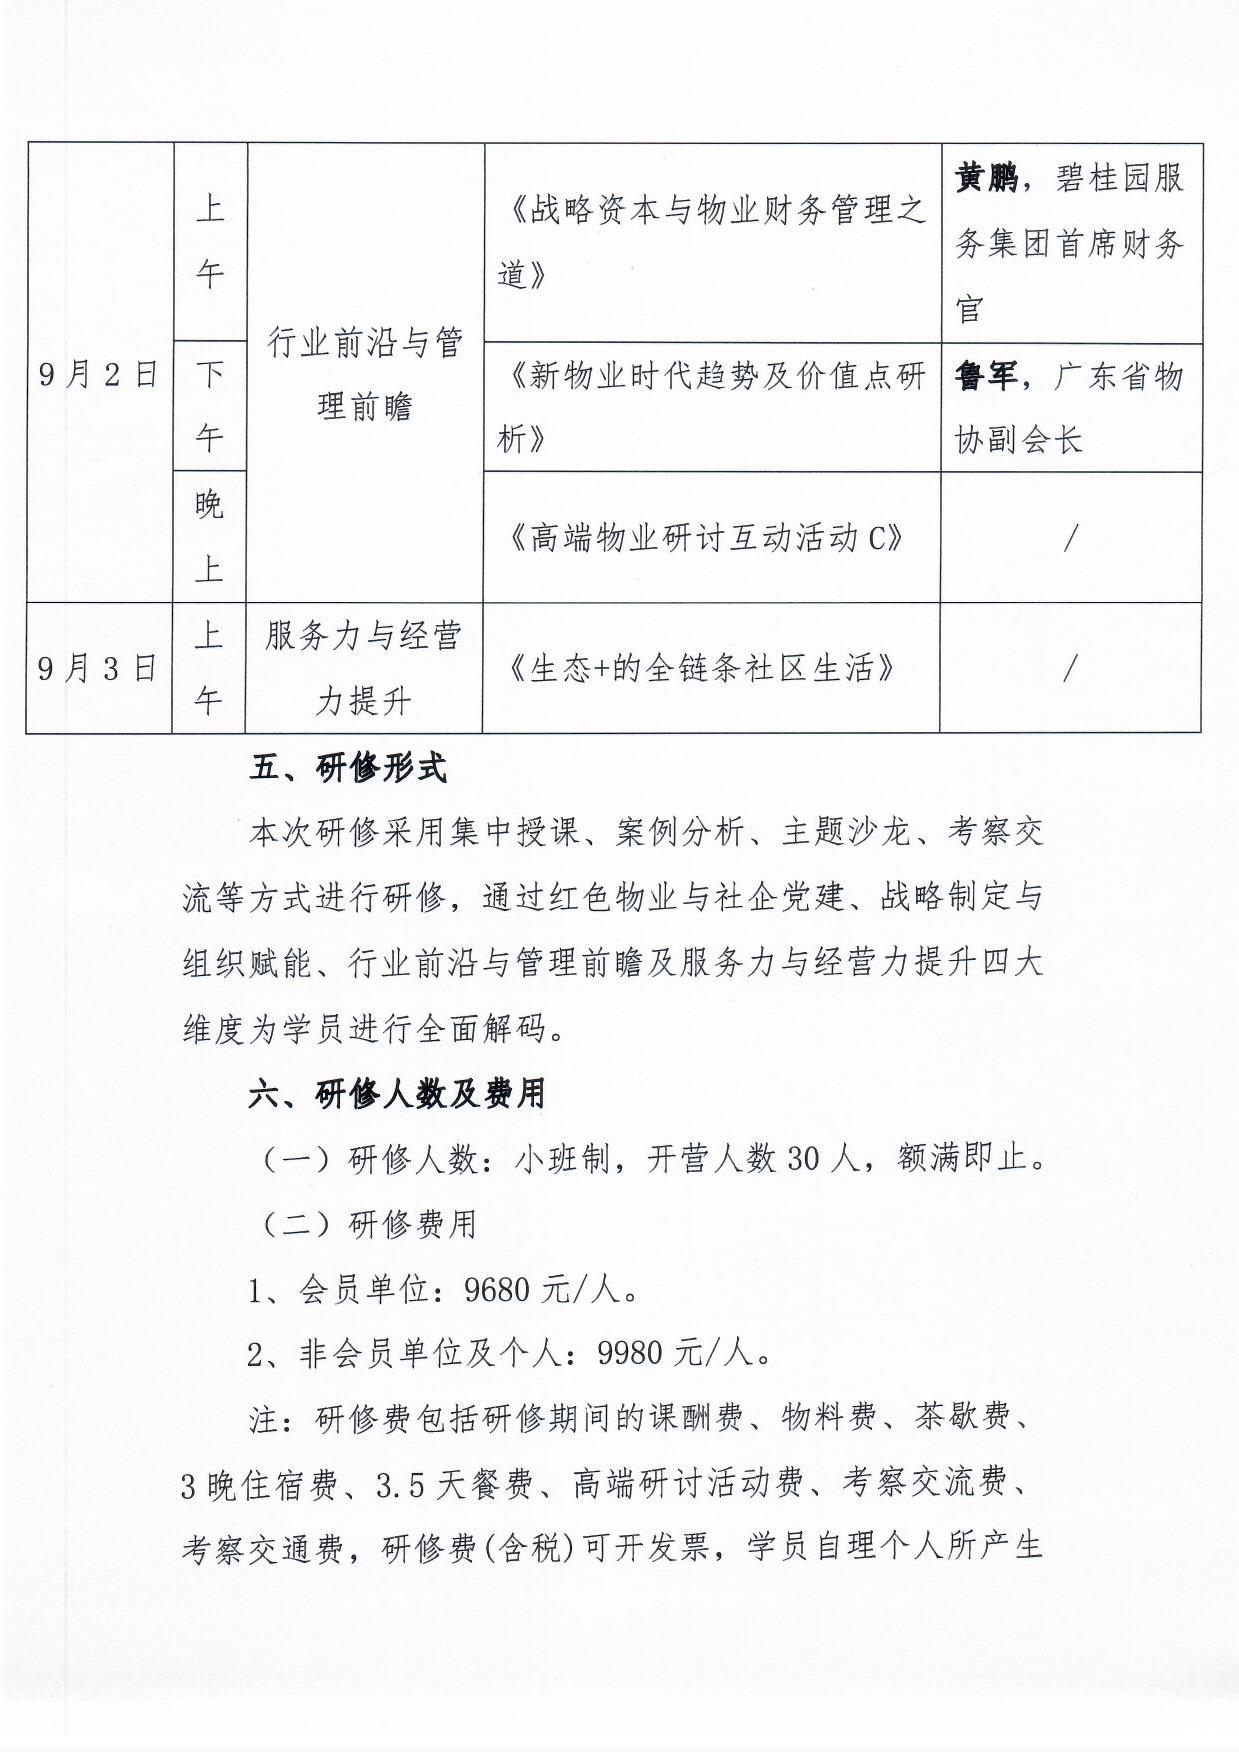 关于举办《物业总裁(惠州)研修营》的通知4.jpg